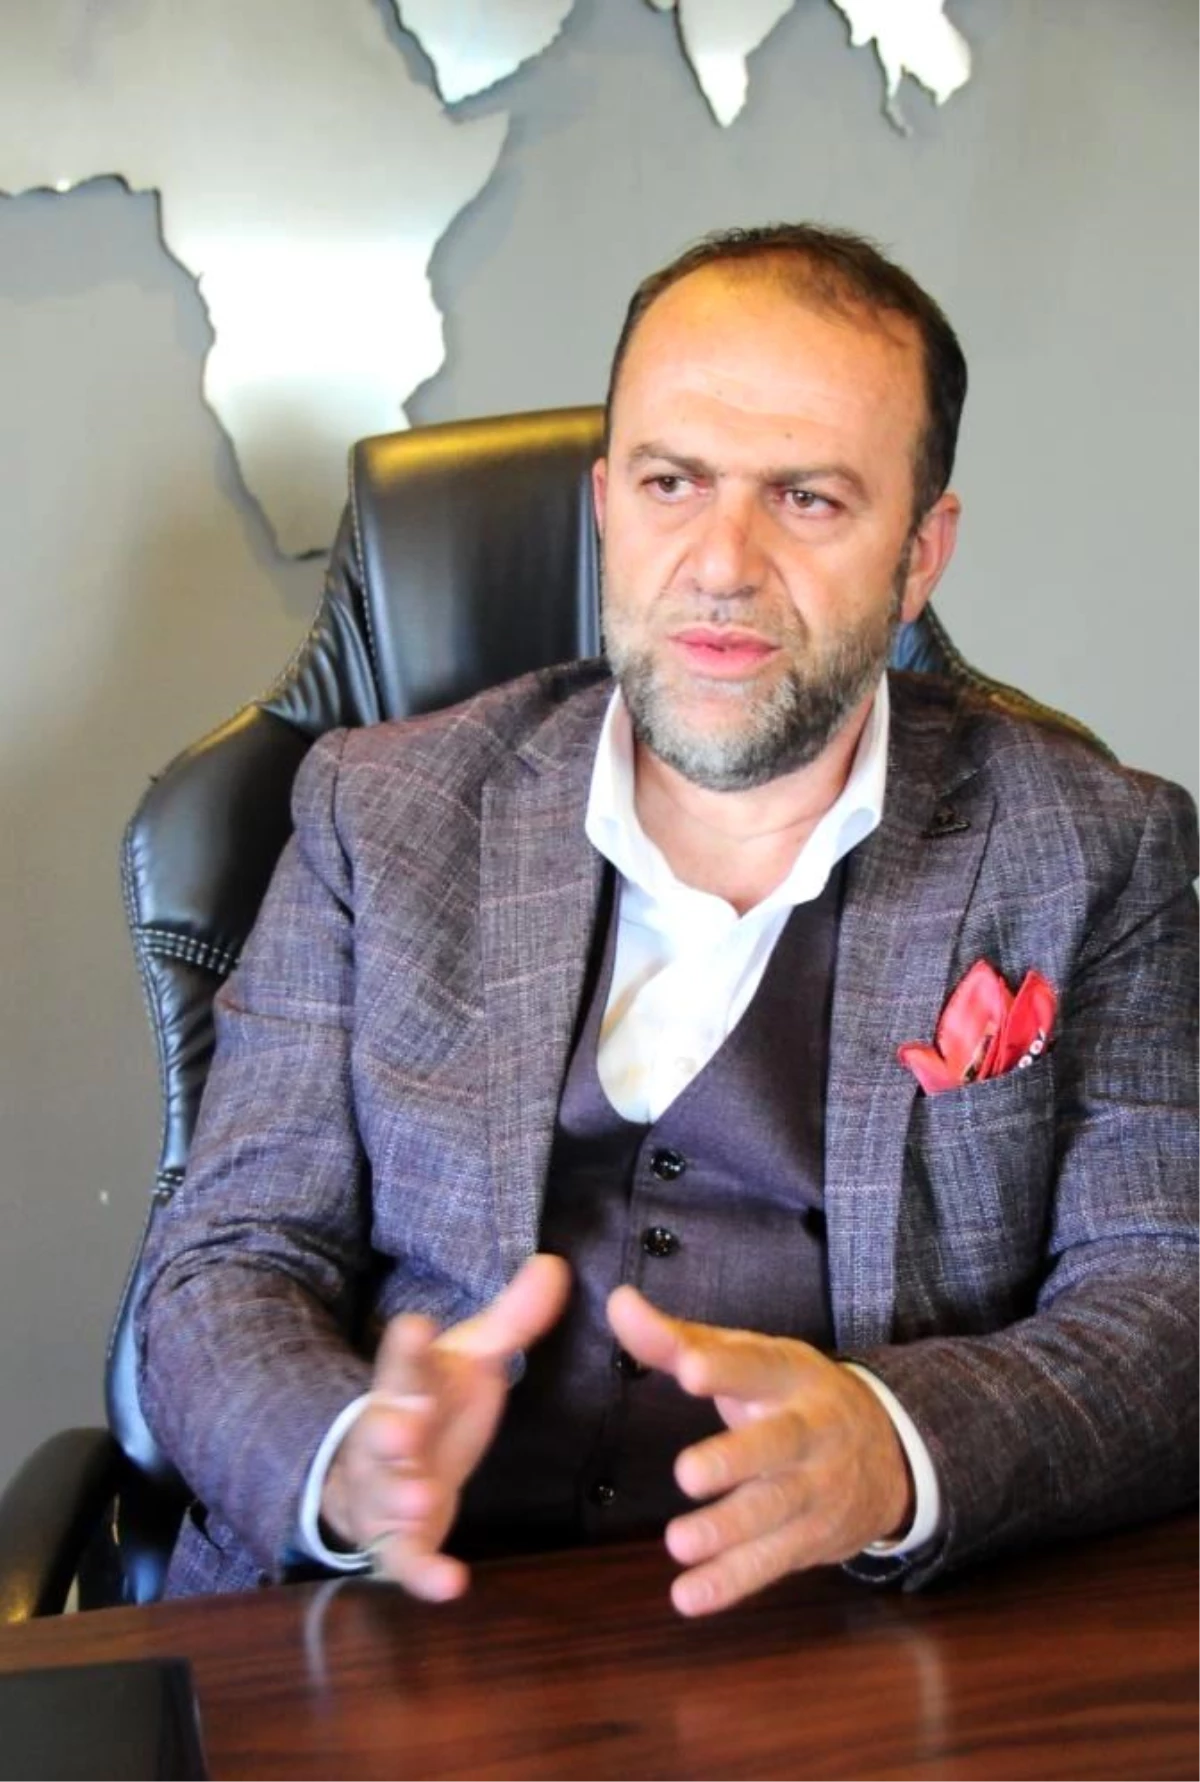 TÜMSİAD Başkanı Gözütok "Post Modern Darbe"yi sert sözlerle kınadı